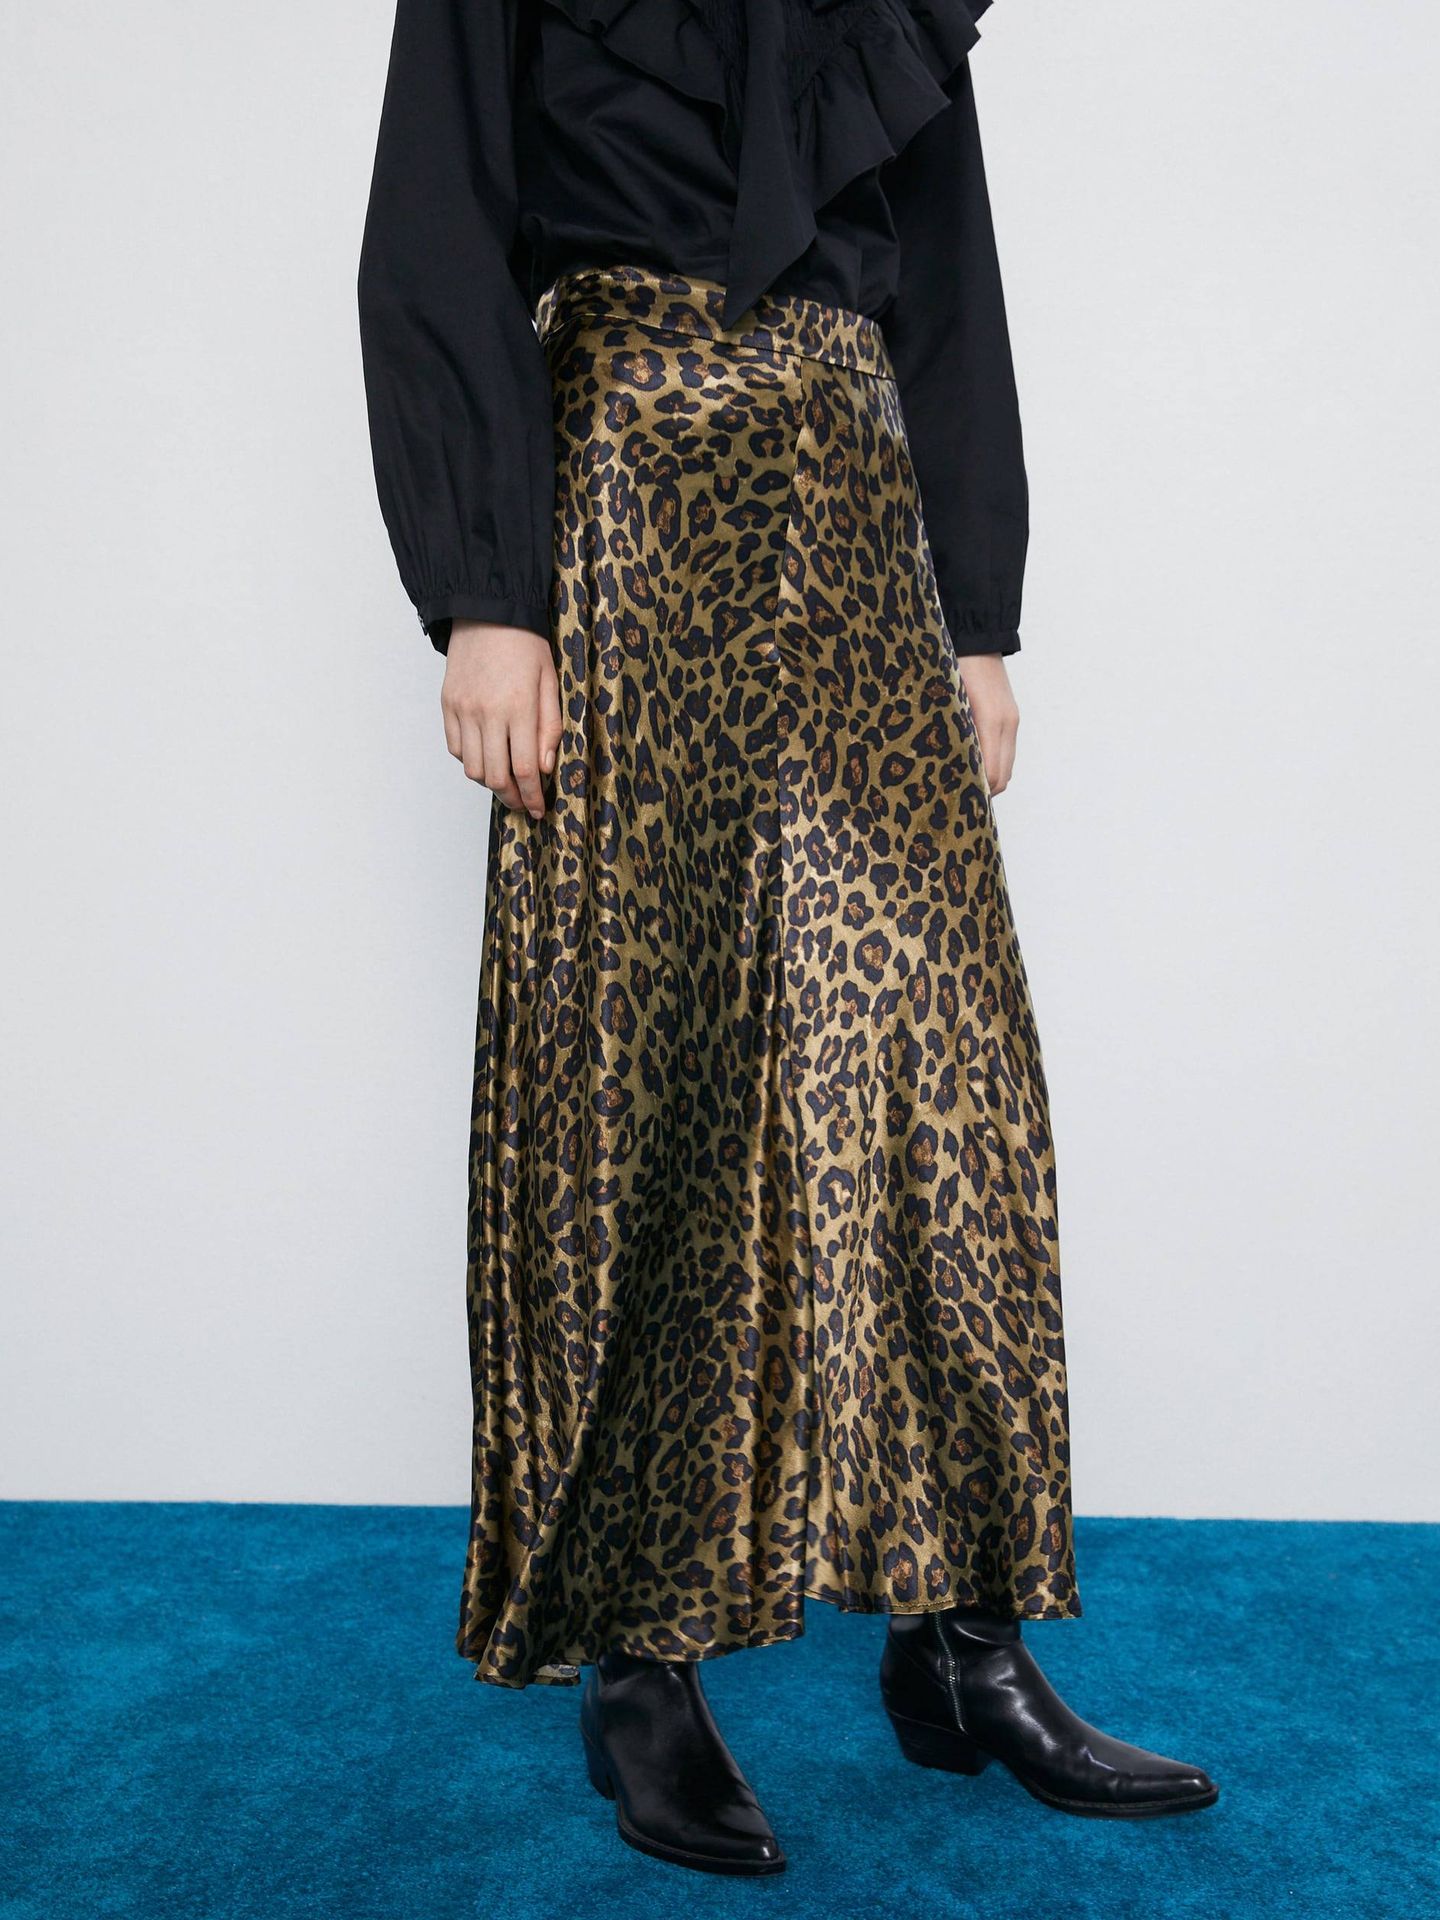 Convencional Todo el tiempo Antecedente Vicky Martín Berrocal combina así de bien esta falda de leopardo de Zara y  nos fascina